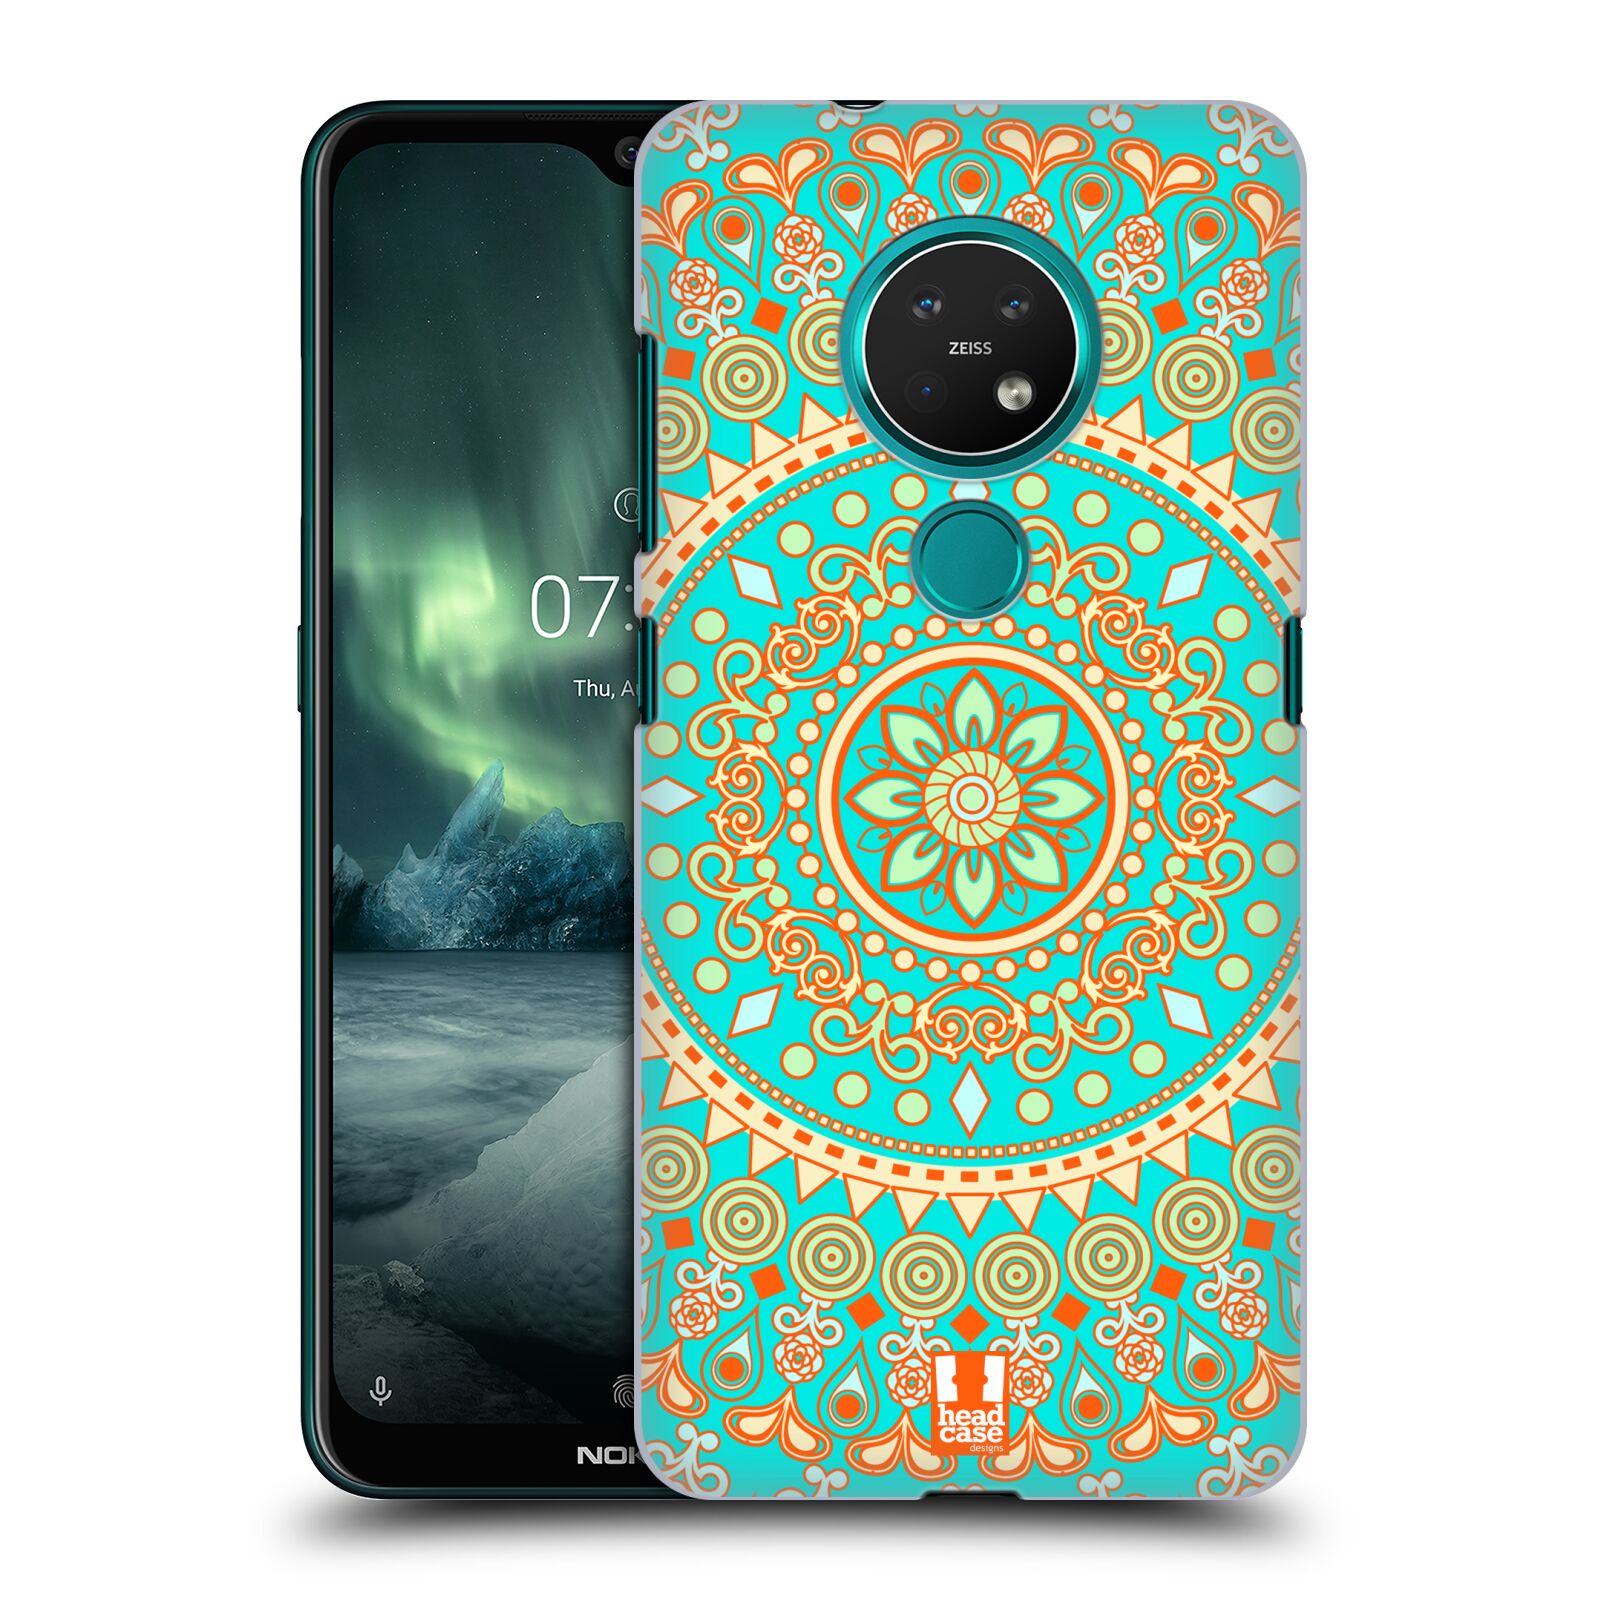 Pouzdro na mobil NOKIA 7.2 - HEAD CASE - vzor Indie Mandala slunce barevný motiv TYRKYSOVÁ, ZELENÁ